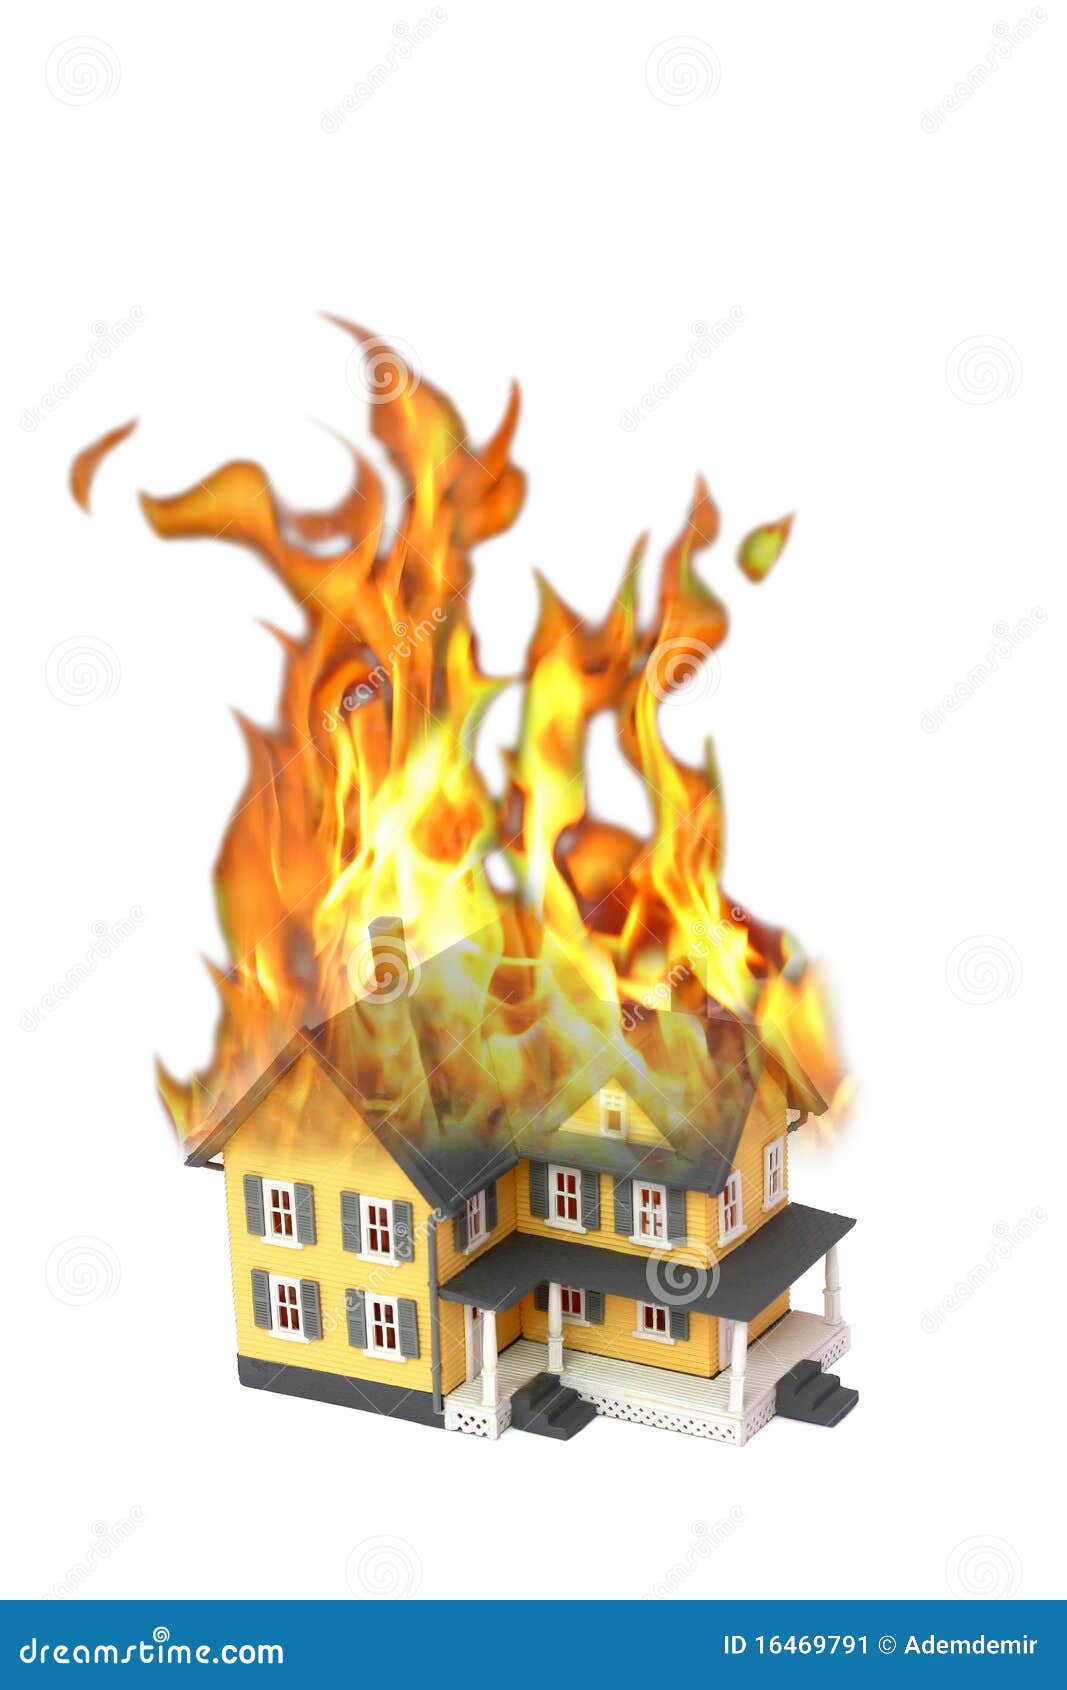 free clipart burning house - photo #23